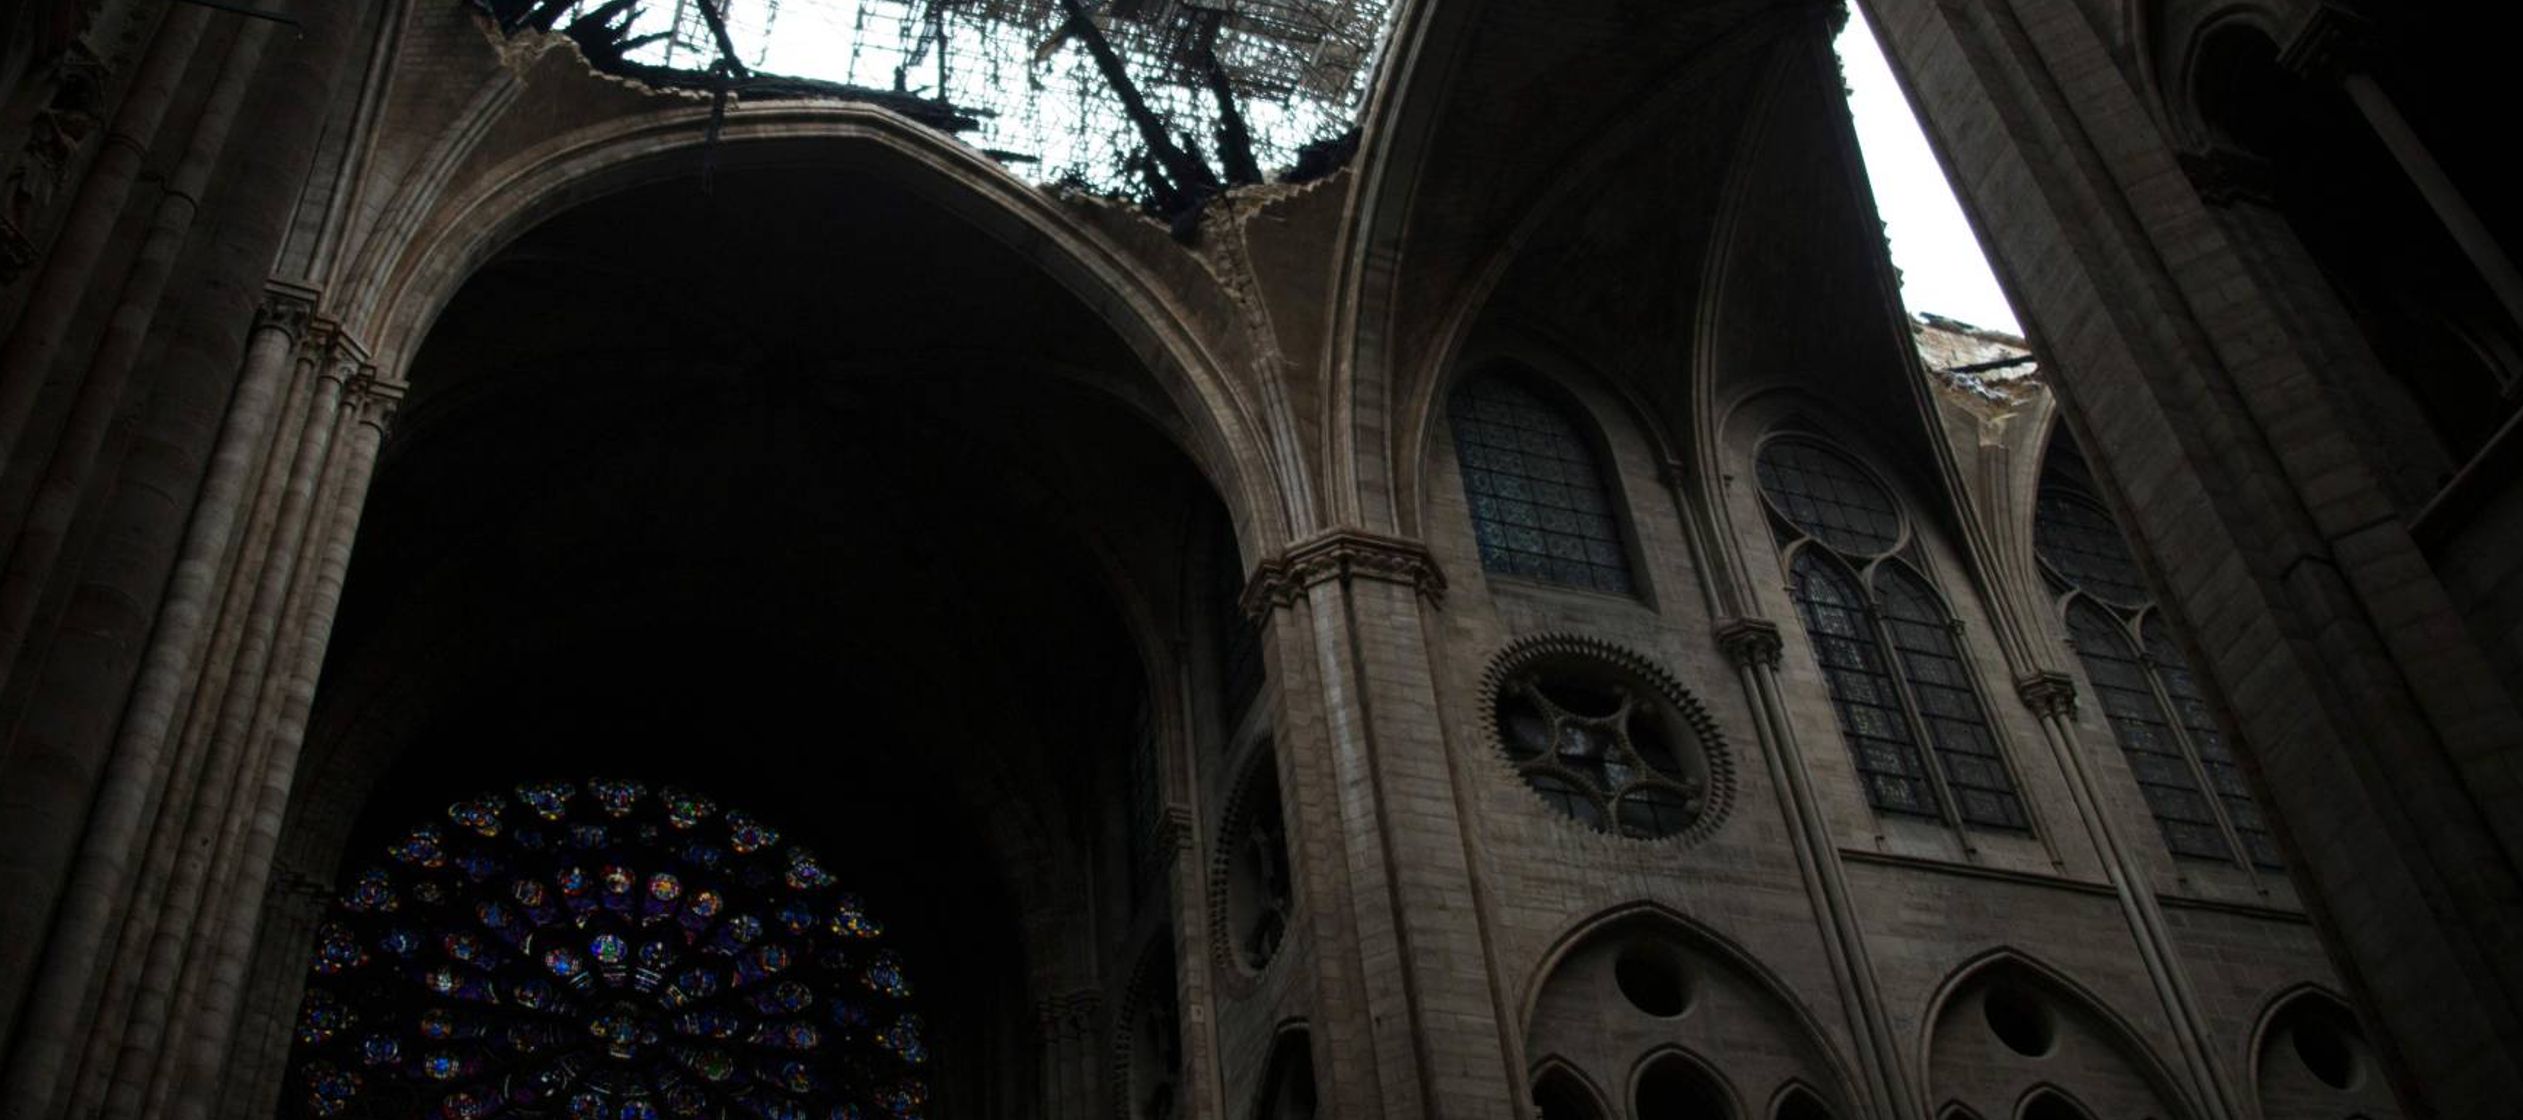 El martes amanece gris y frío, como el ánimo de todos en Notre Dame. Los restos...